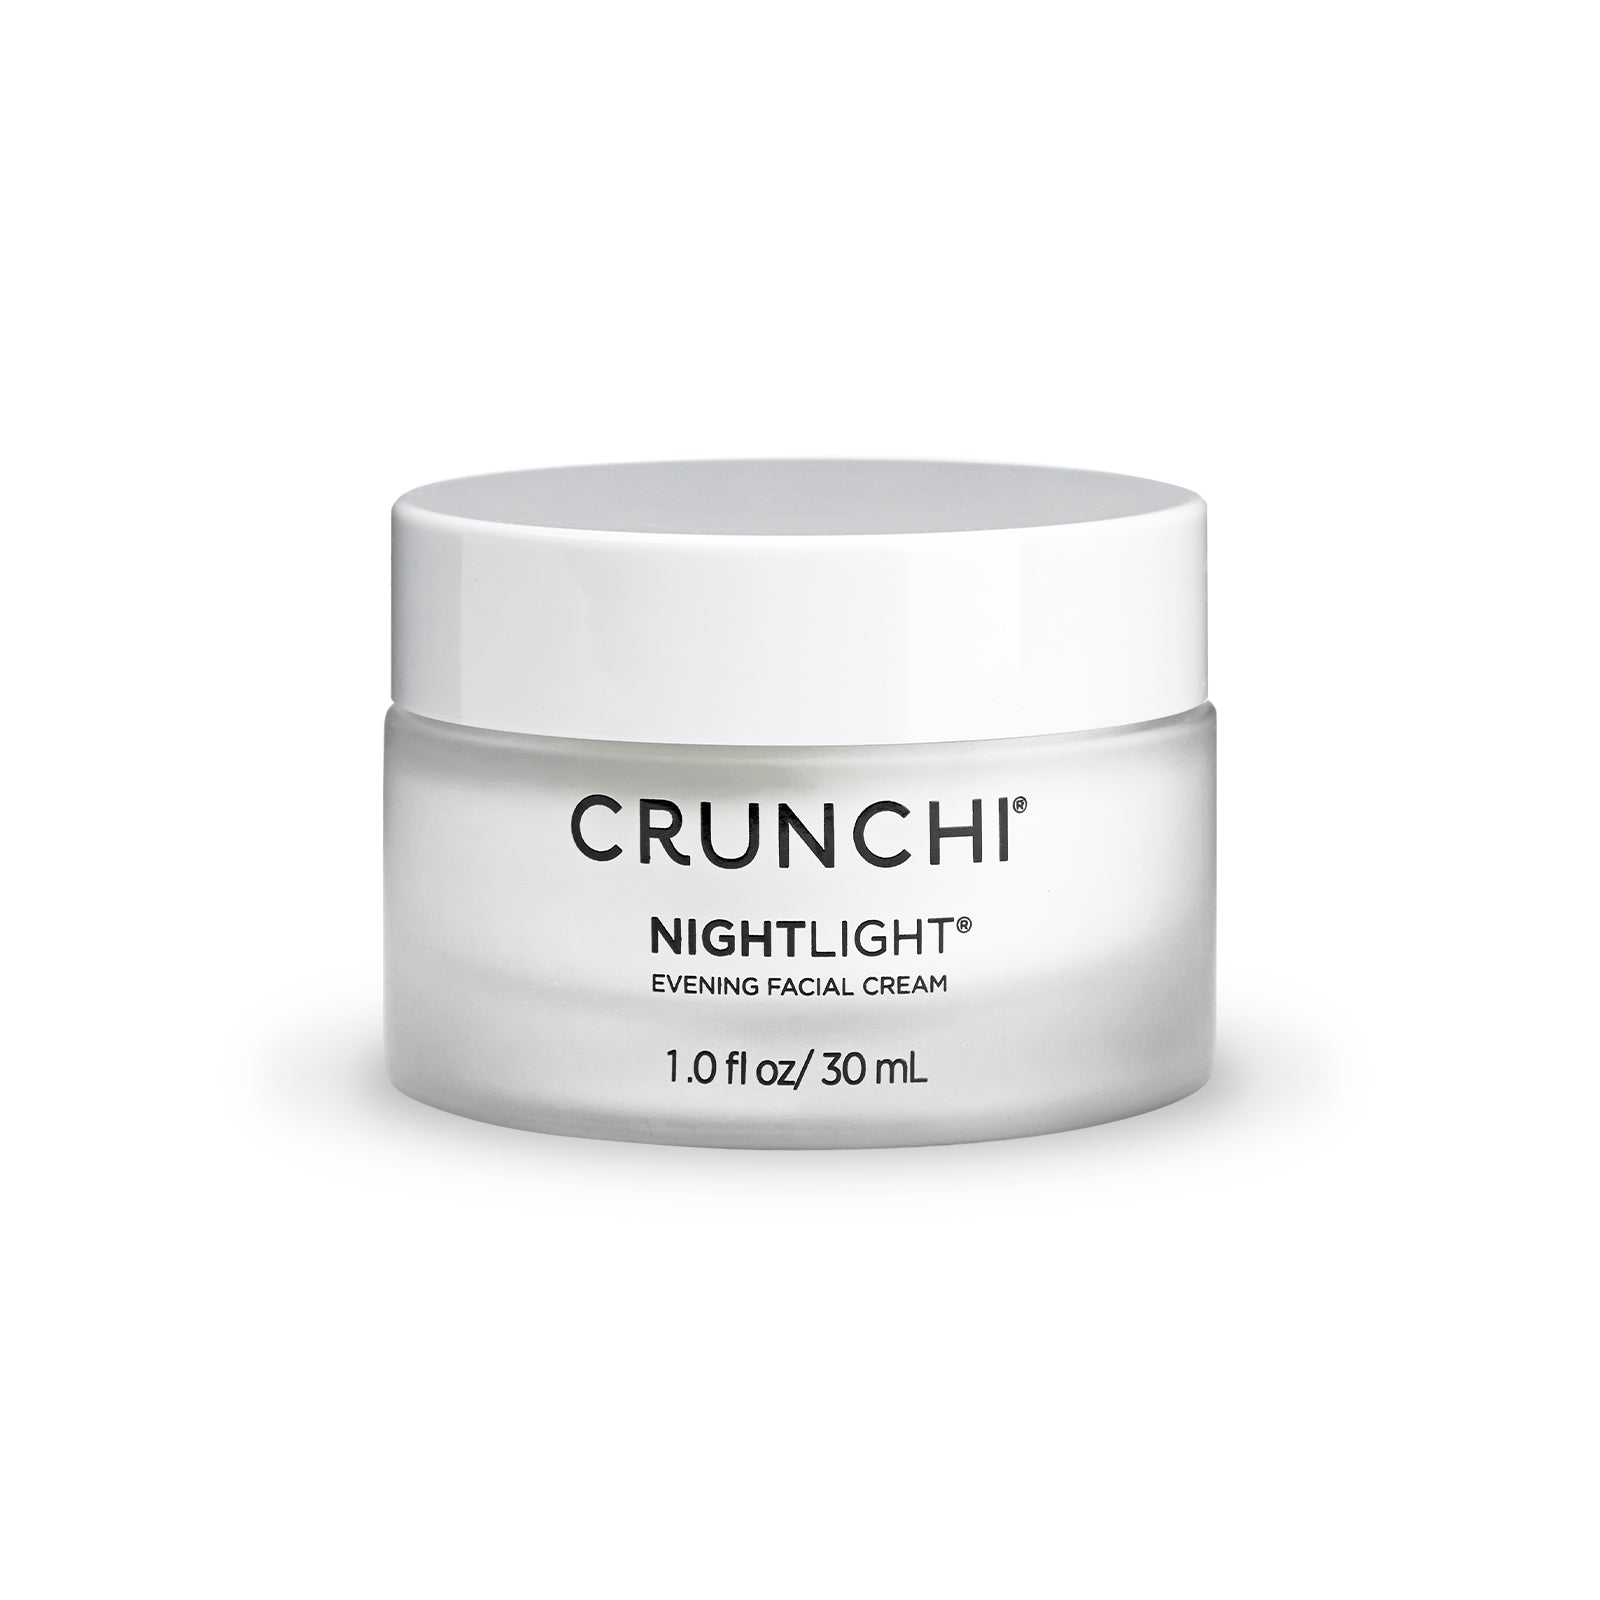 Nightlight® Facial Cream